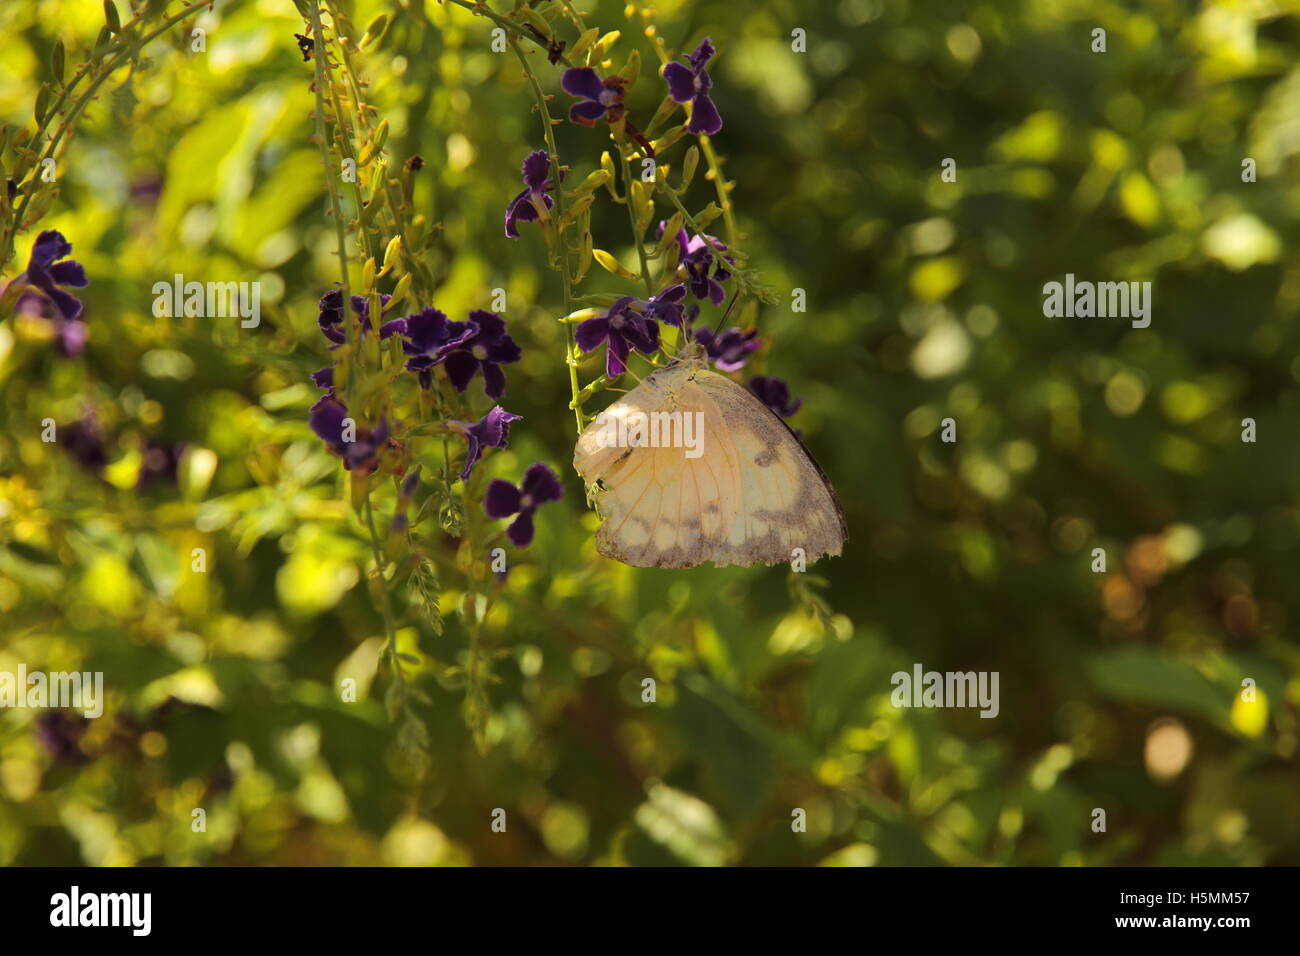 White Butterfly on Garden Flower Stock Photo